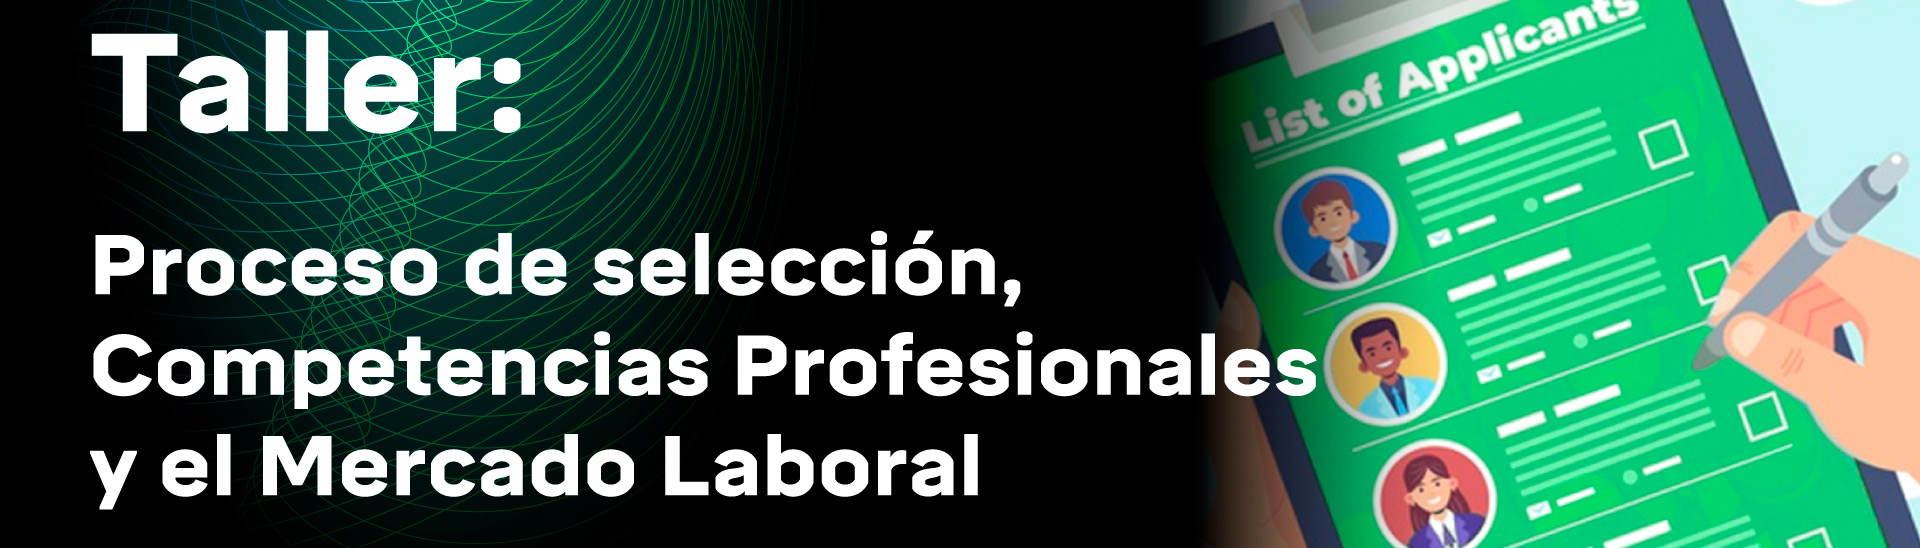 Taller: Proceso De Selección, Competencias Profesionales Y El Mercado Laboral Empleo.com